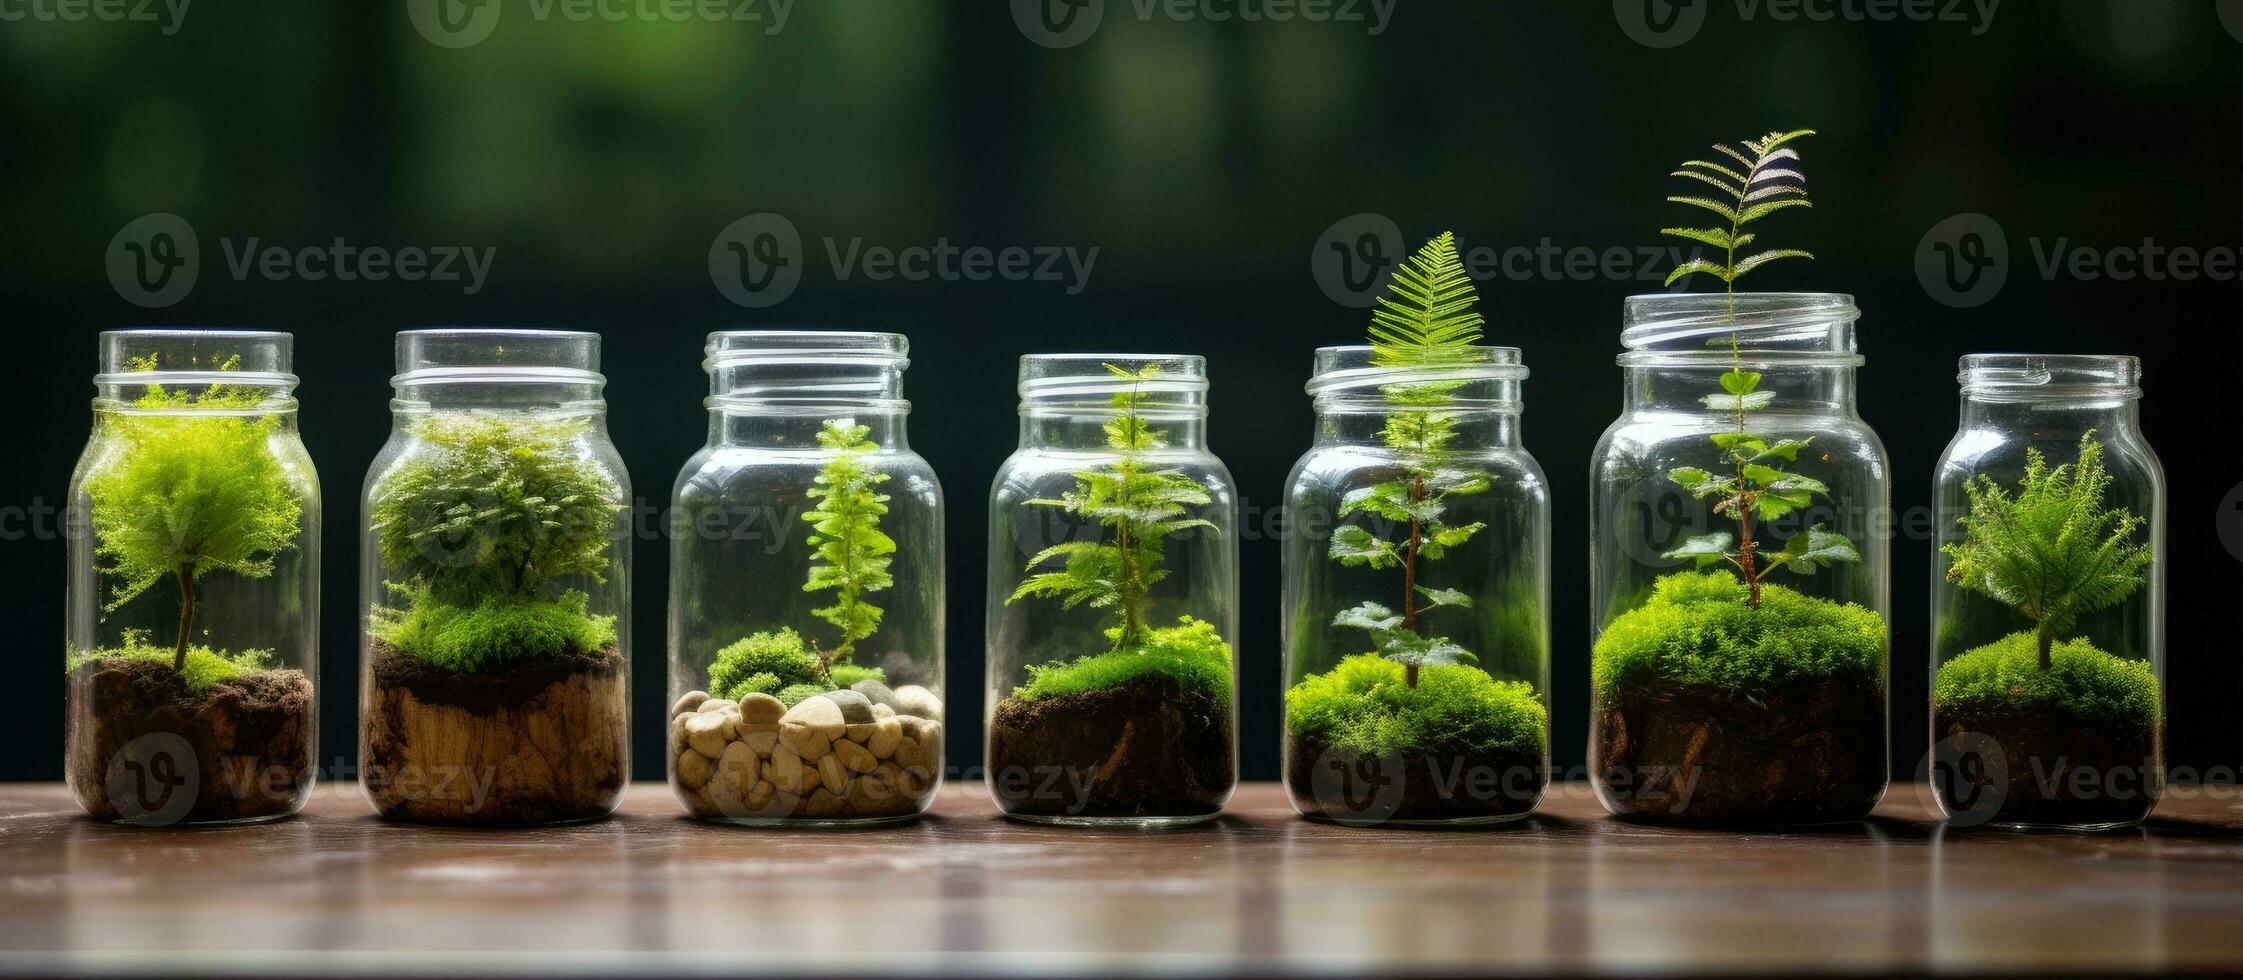 terrarium potten met miniatuur Woud ecosystemen bevorderen aarde behoud bonsai en terrarium sets foto